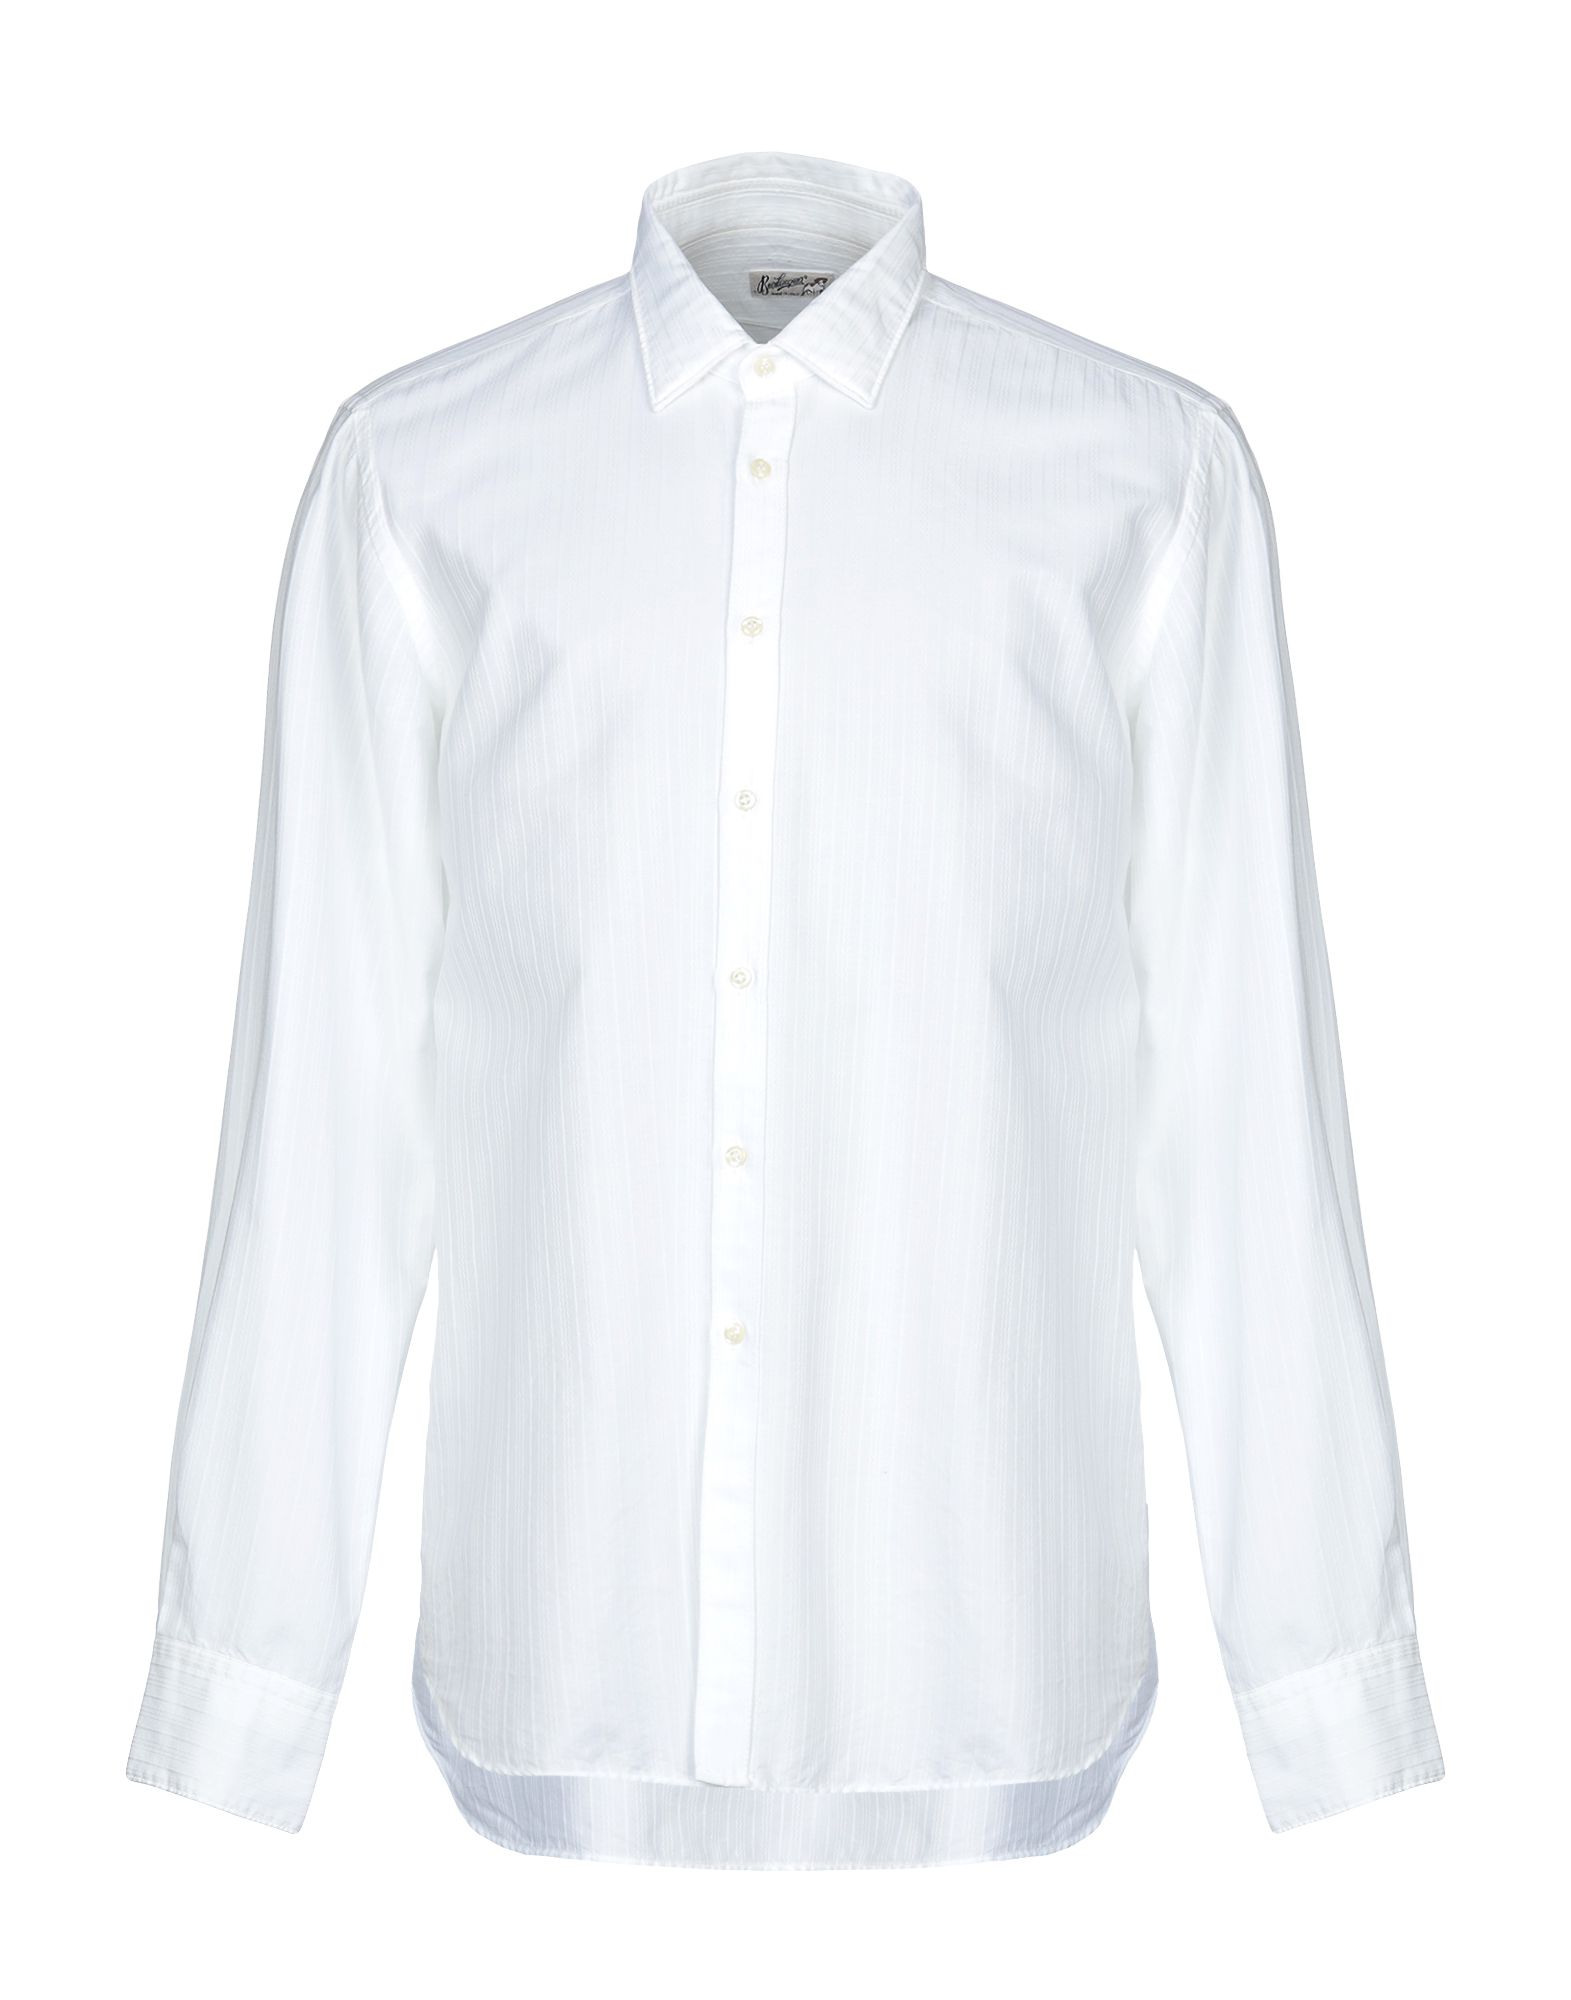 《送料無料》BEVILACQUA メンズ シャツ ホワイト XL コットン 100%